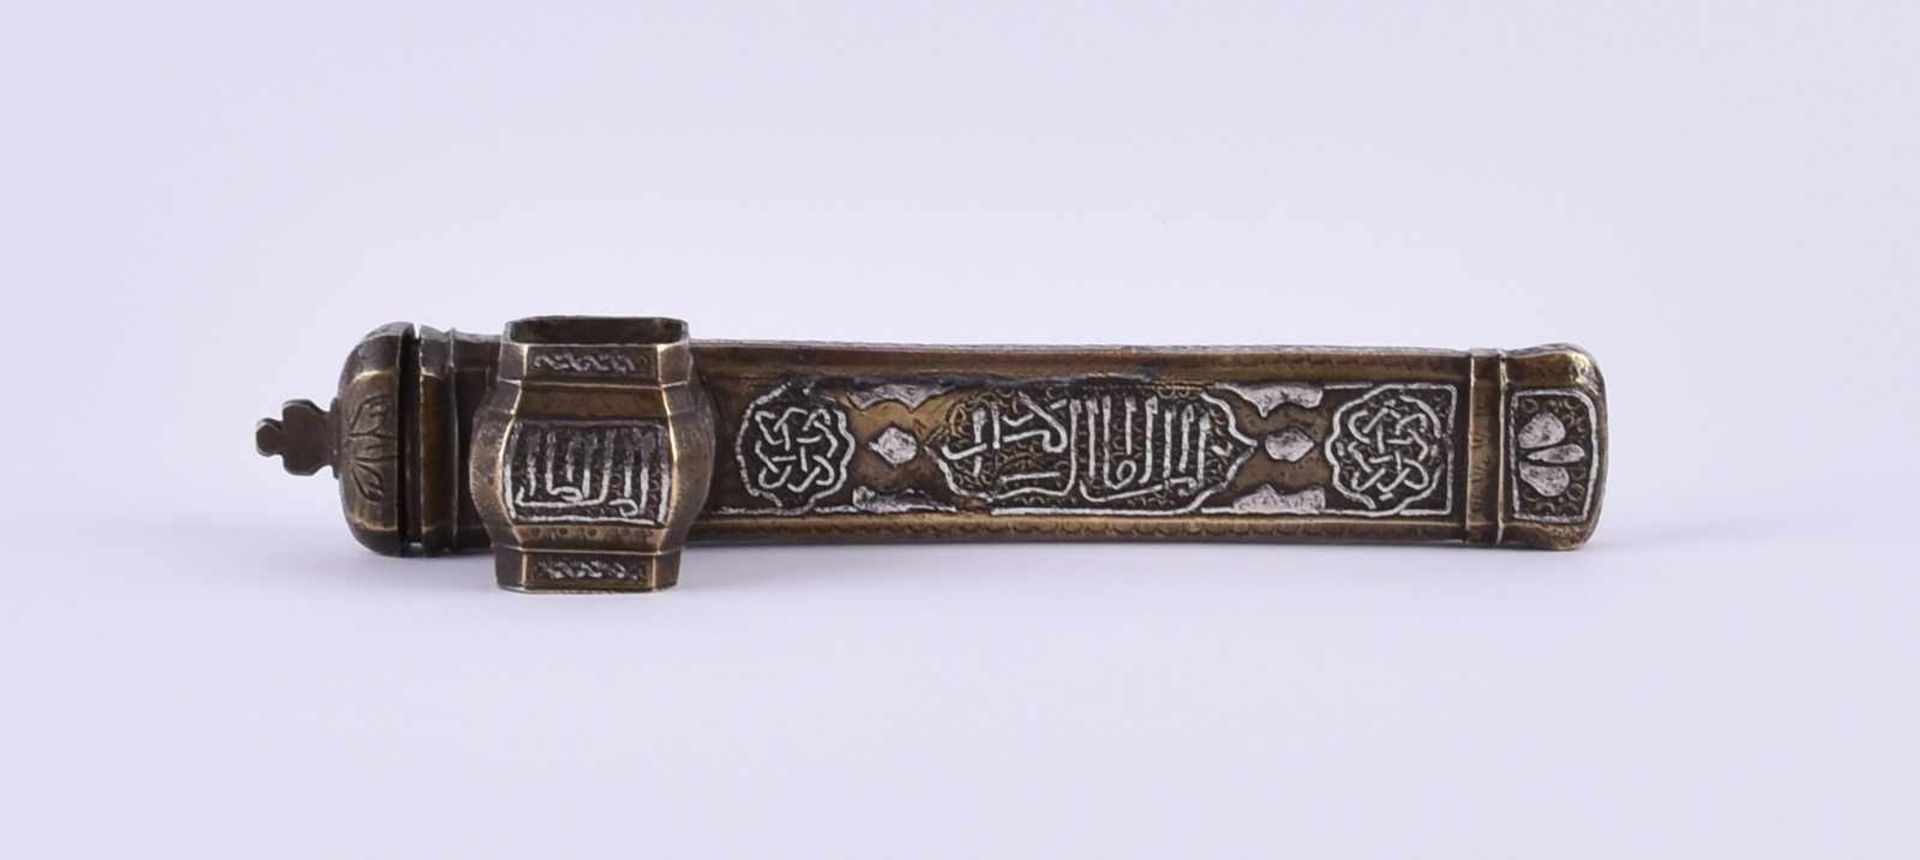 Reise-Schreibzeug, Islamik Penbox um 1900Bronze mit Silberinlet, L: 22 cmTravel writing utensils,